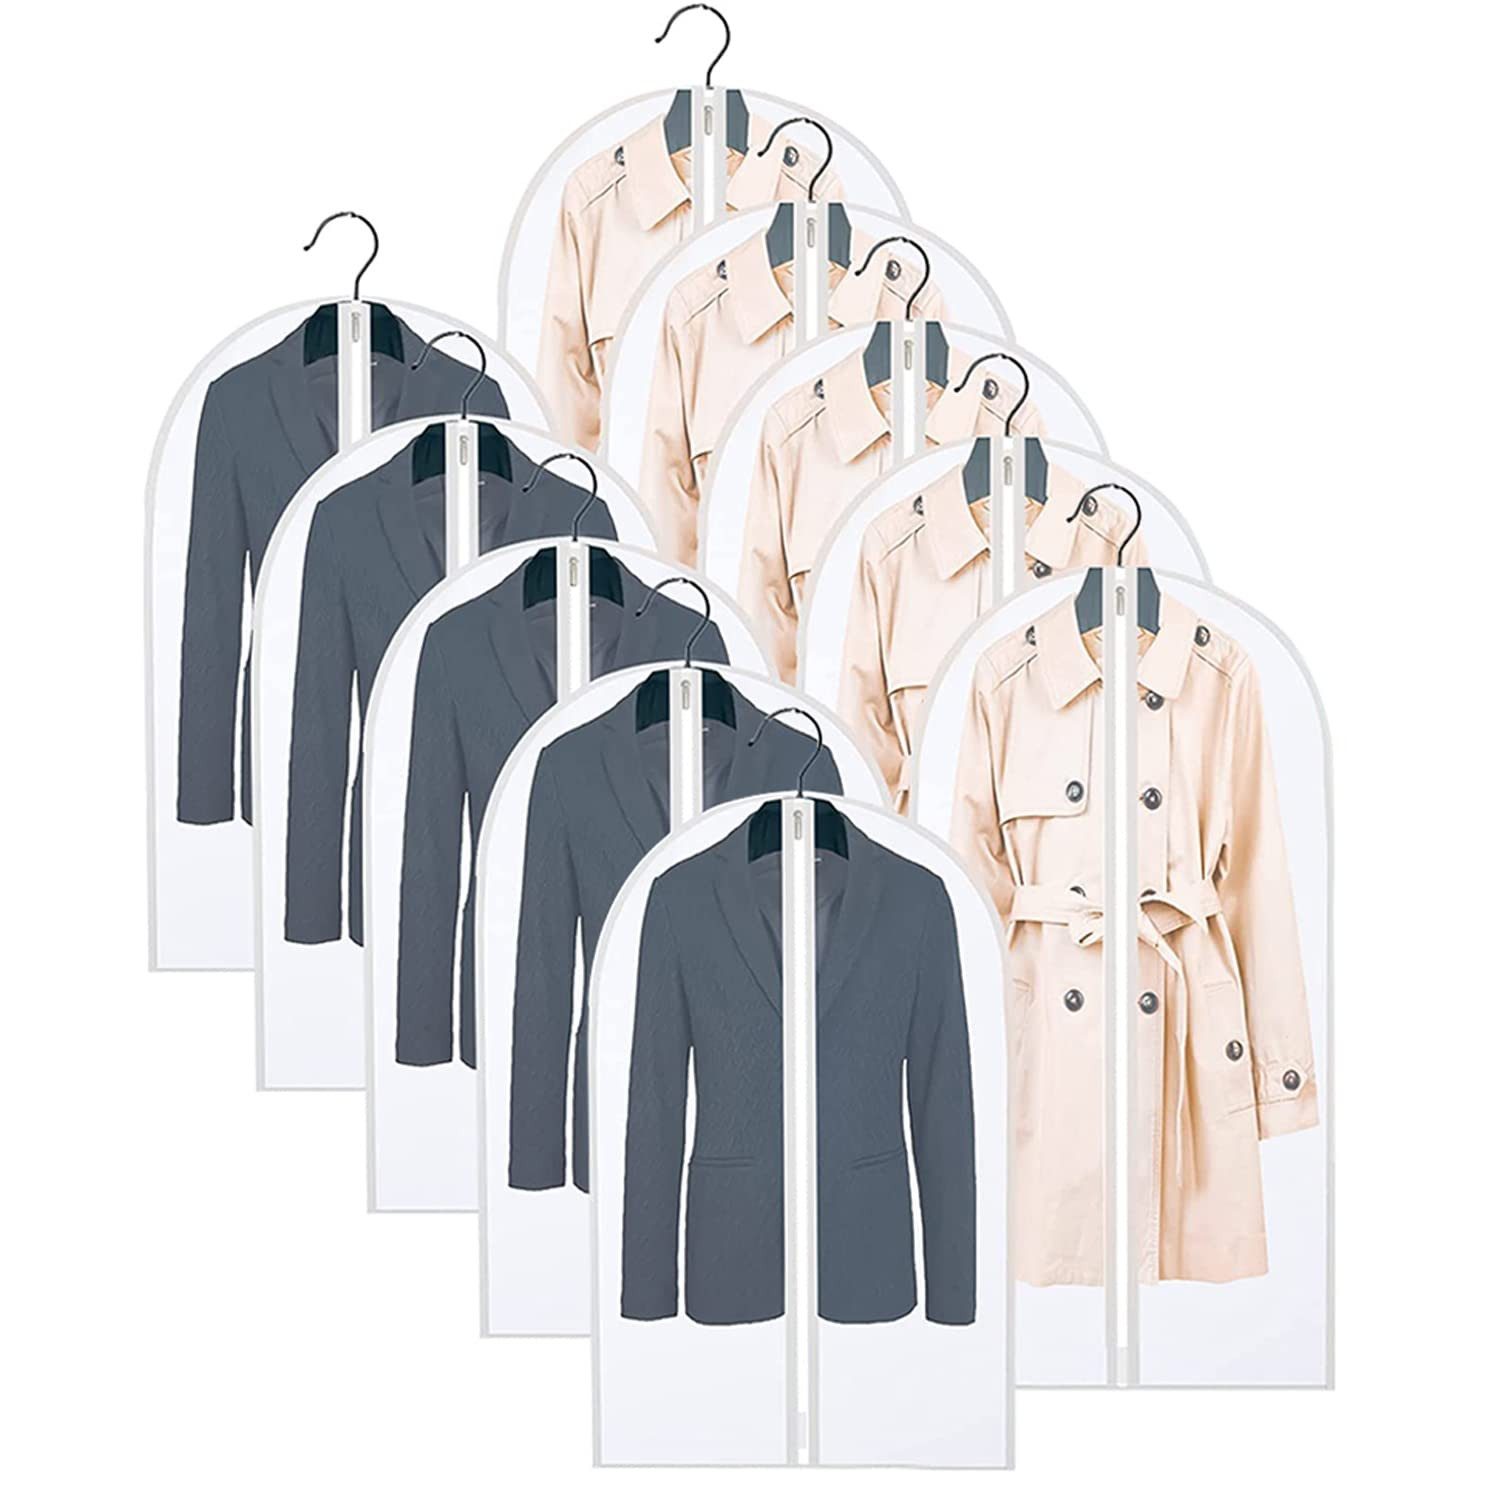 Cbei Kleidersack Kleiderschutzhülle transparente Kleidersäcke Staubdichte durchsichtige (Kleidersack von Kleidung und staubdicht, 10 St., grande: 120 cm x 60 cm /Mediano: 100 cm x 60 cm) für Anzüge Kleider Mäntel Sakkos Hemden Aufbewahrung Kleiderhülle